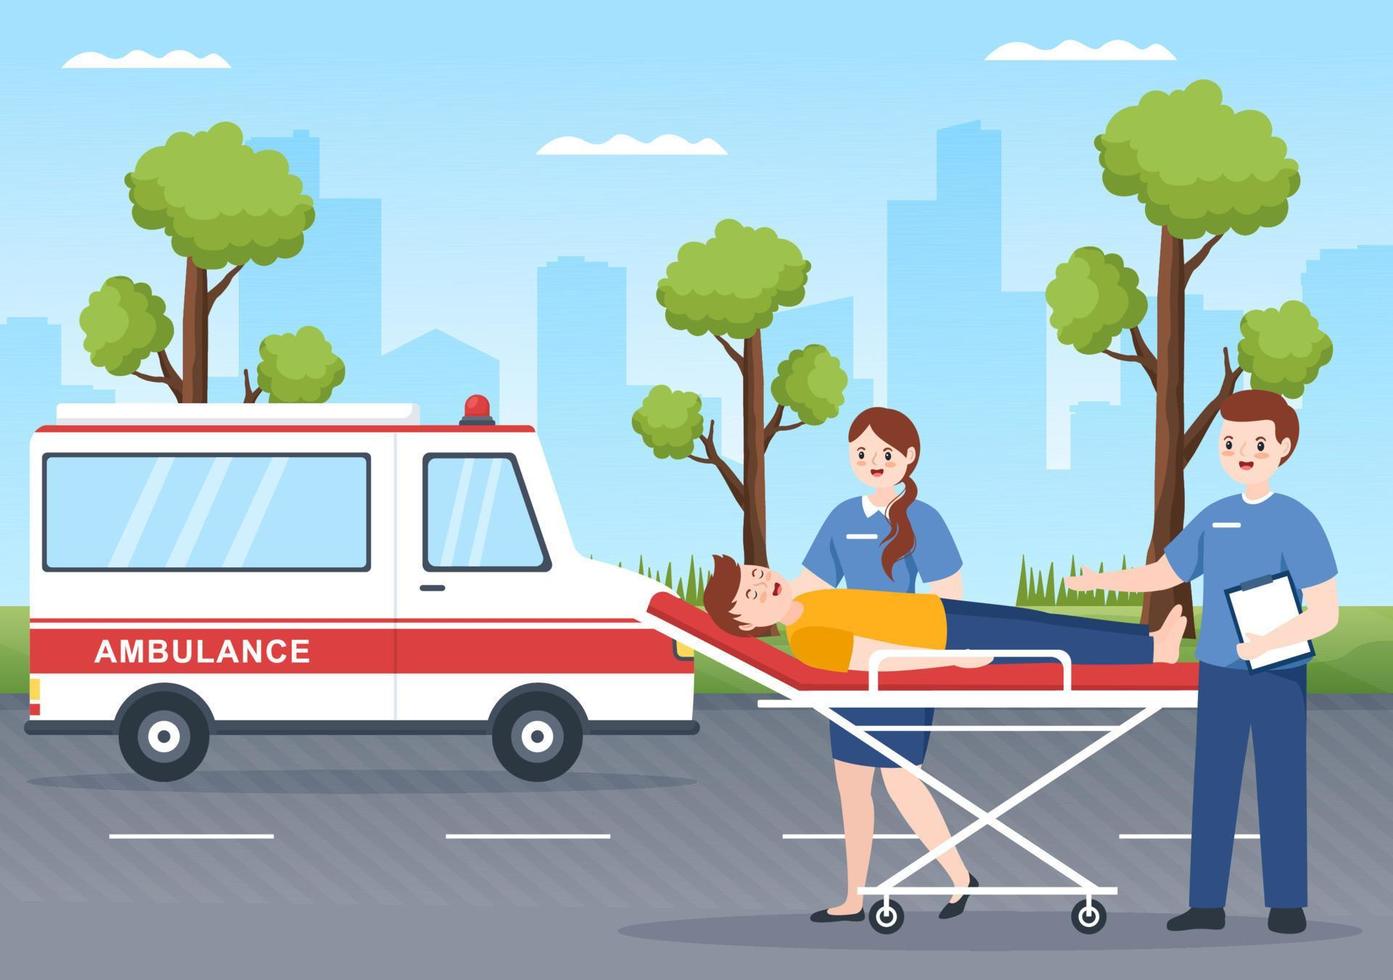 vehículo médico ambulancia coche o servicio de emergencia para recoger al paciente herido en un accidente en dibujos animados planos dibujados a mano ilustración de plantillas vector